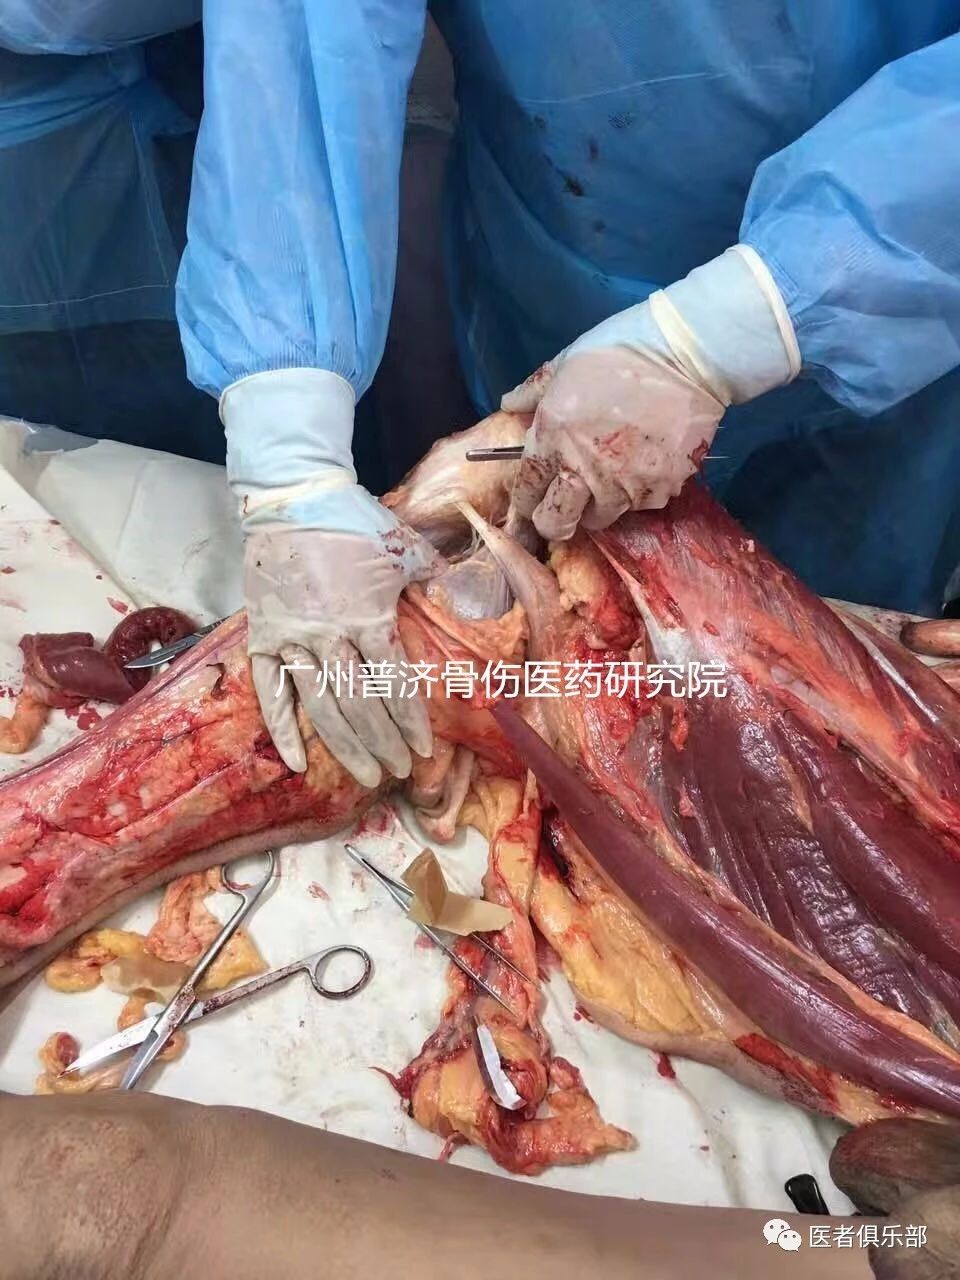 【9月22日--郑州】全国针刀微创新鲜尸体解剖临床高级